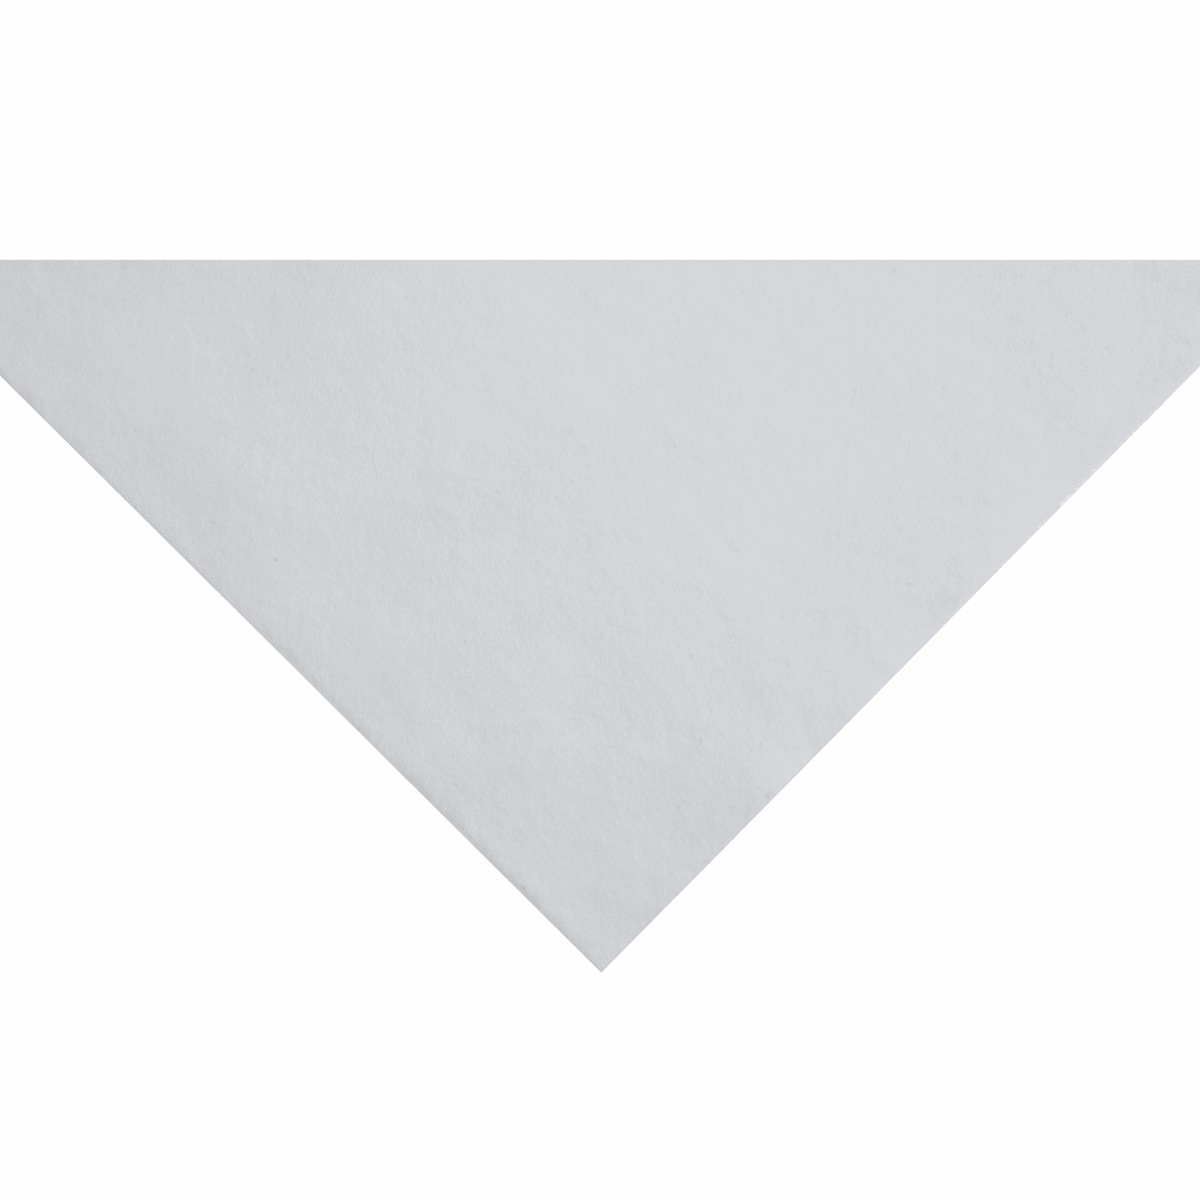 1m Felt Roll - White  Felt Fabric – My Sewing Box